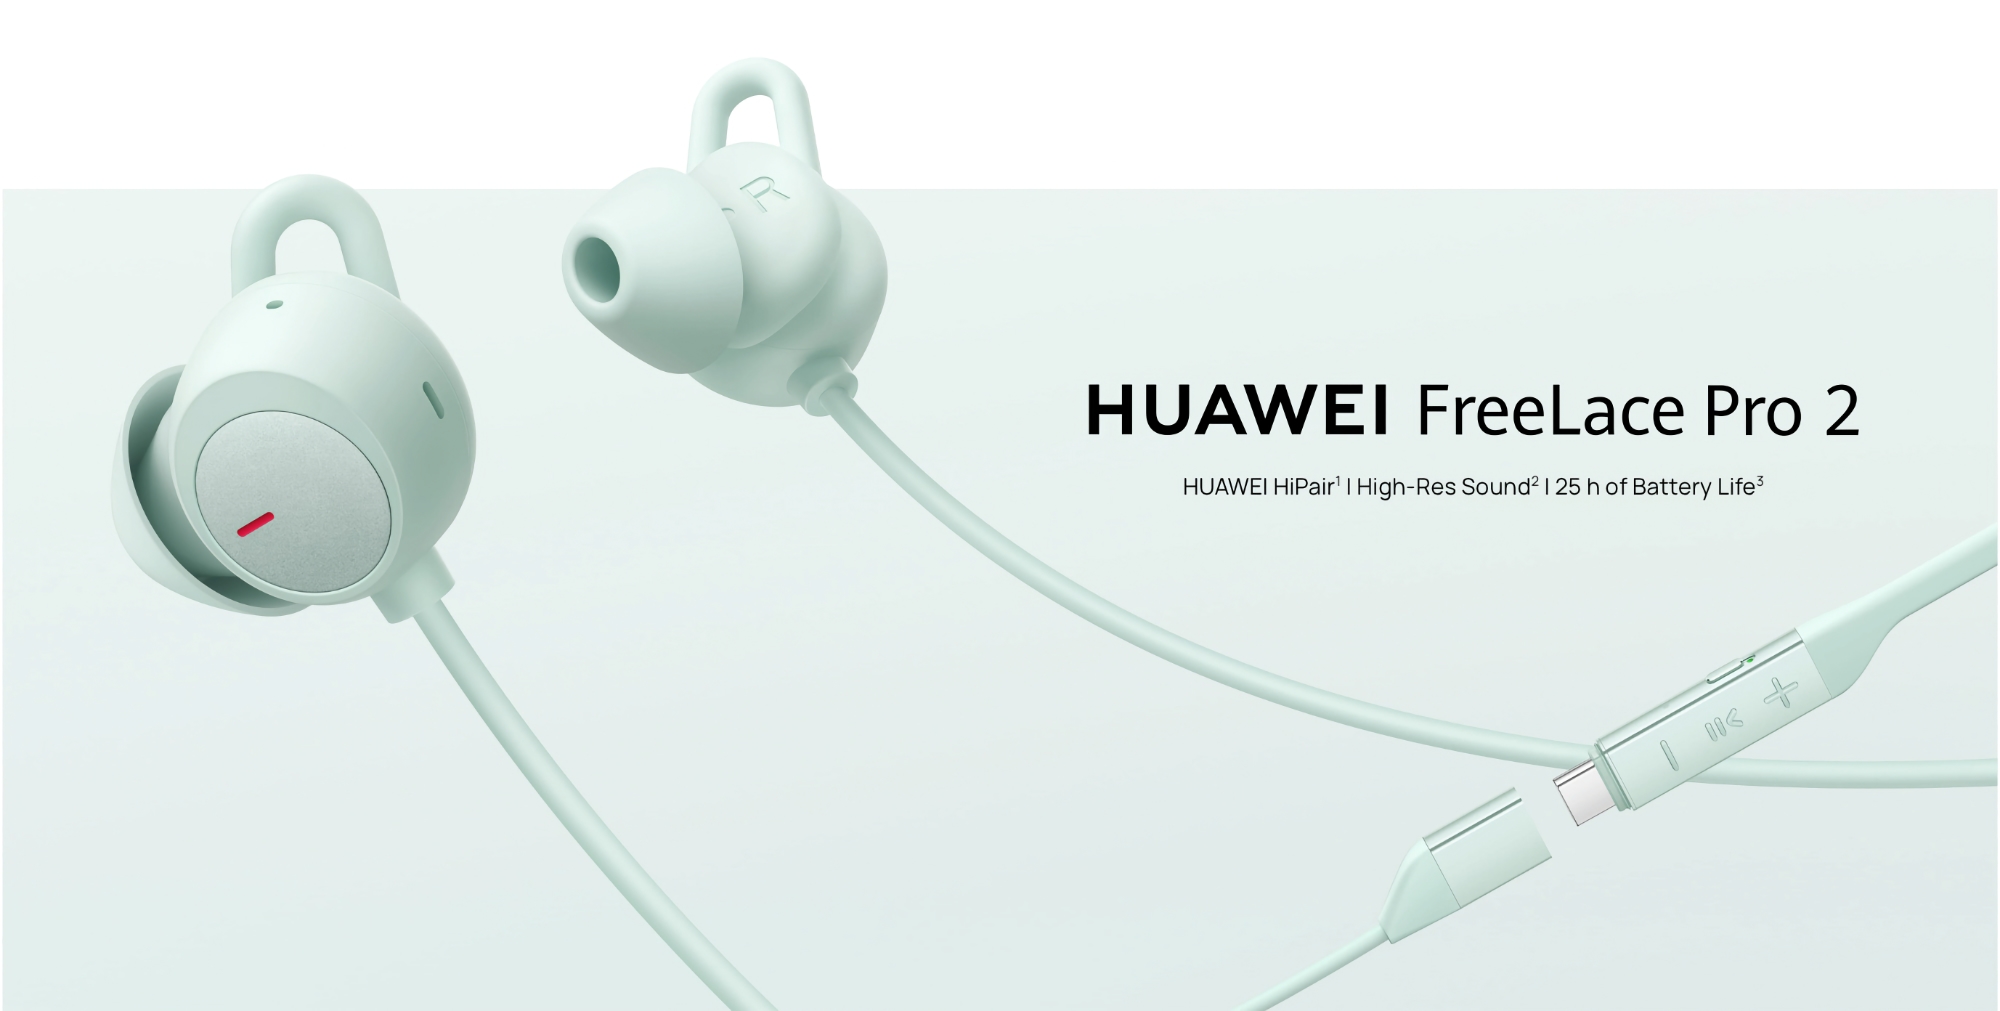 Huawei har lansert FreeLace Pro 2 med ANC og opptil 25 timers batteritid på det globale markedet.